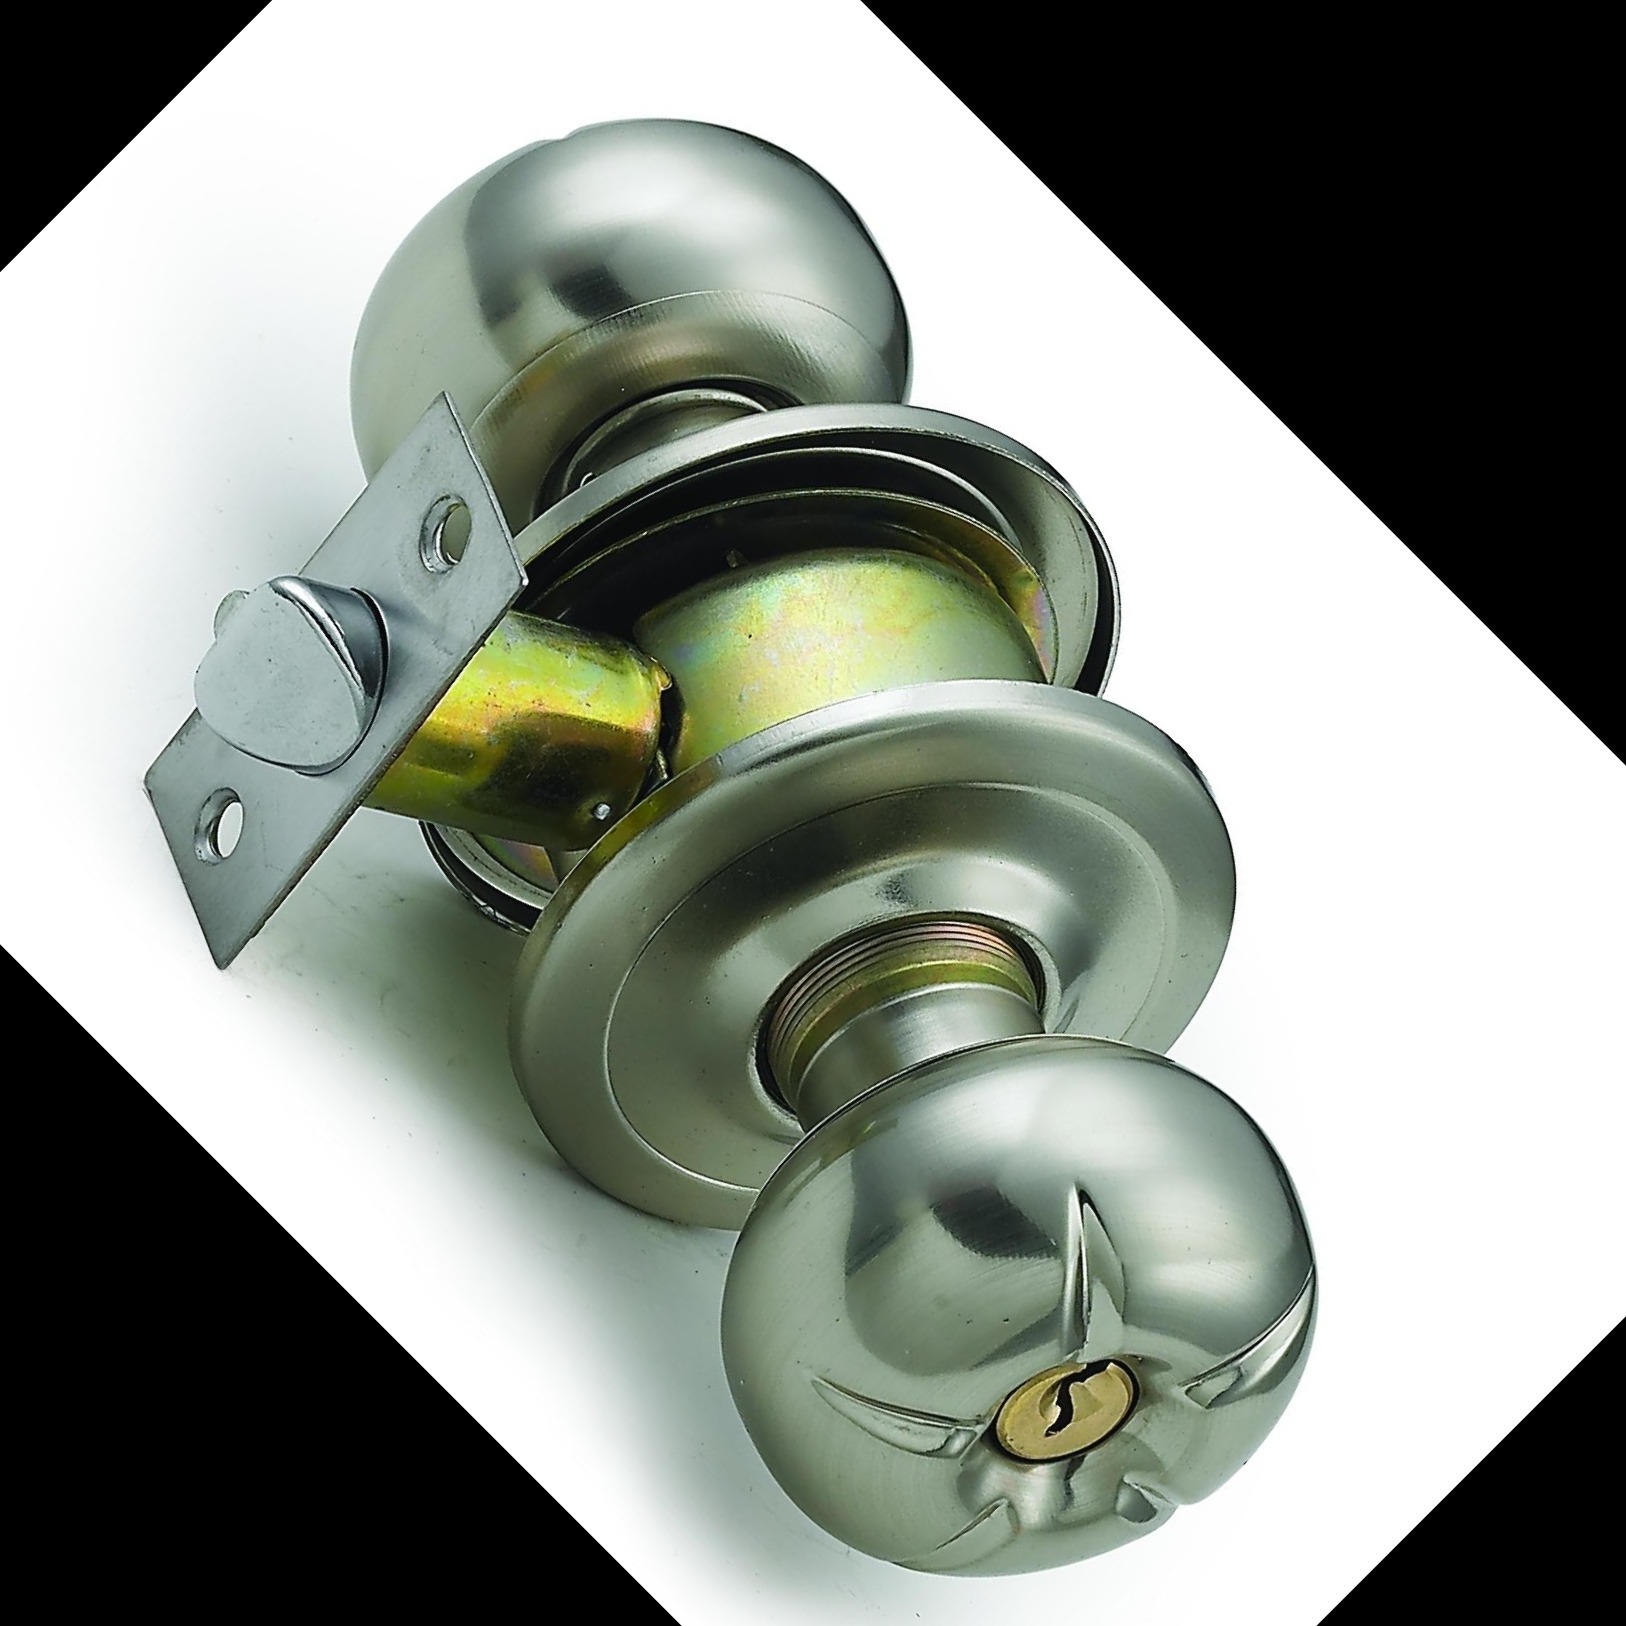 厂家直销 5793球形锁  筒式球形锁 机械门锁 五金锁具生产厂家图片